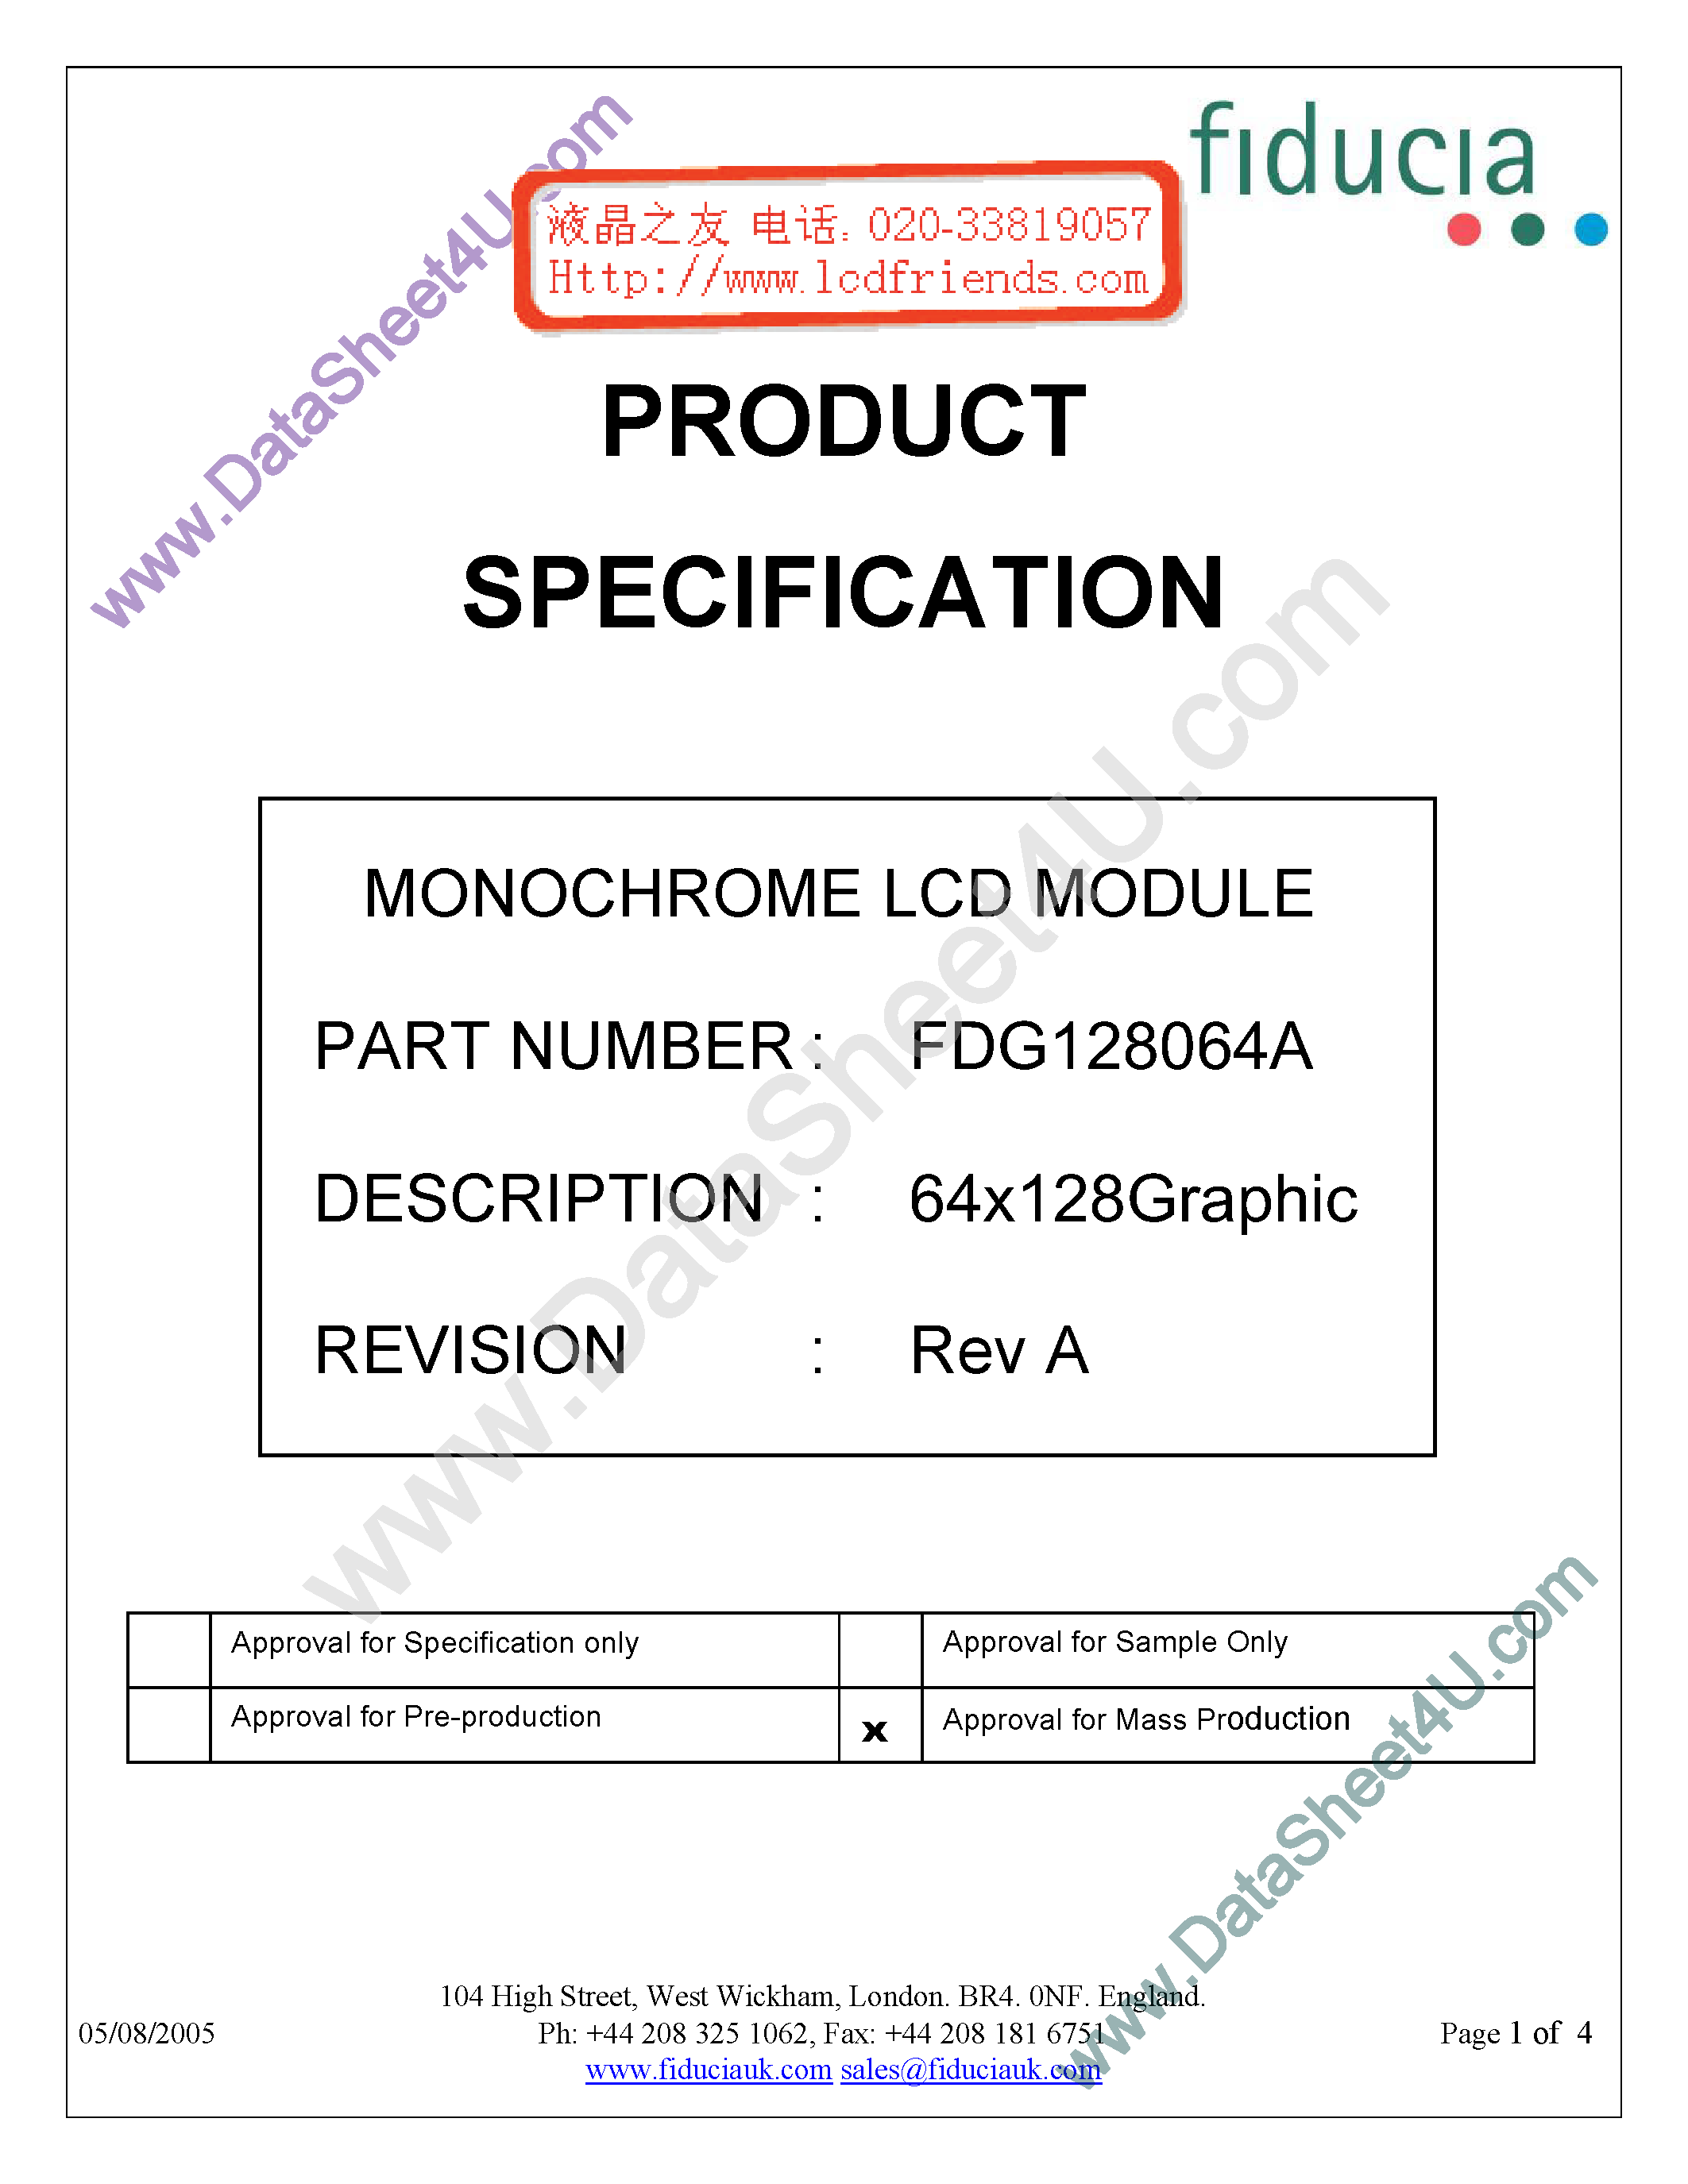 Даташит FDG128064A-Monochrome Lcd Module страница 1